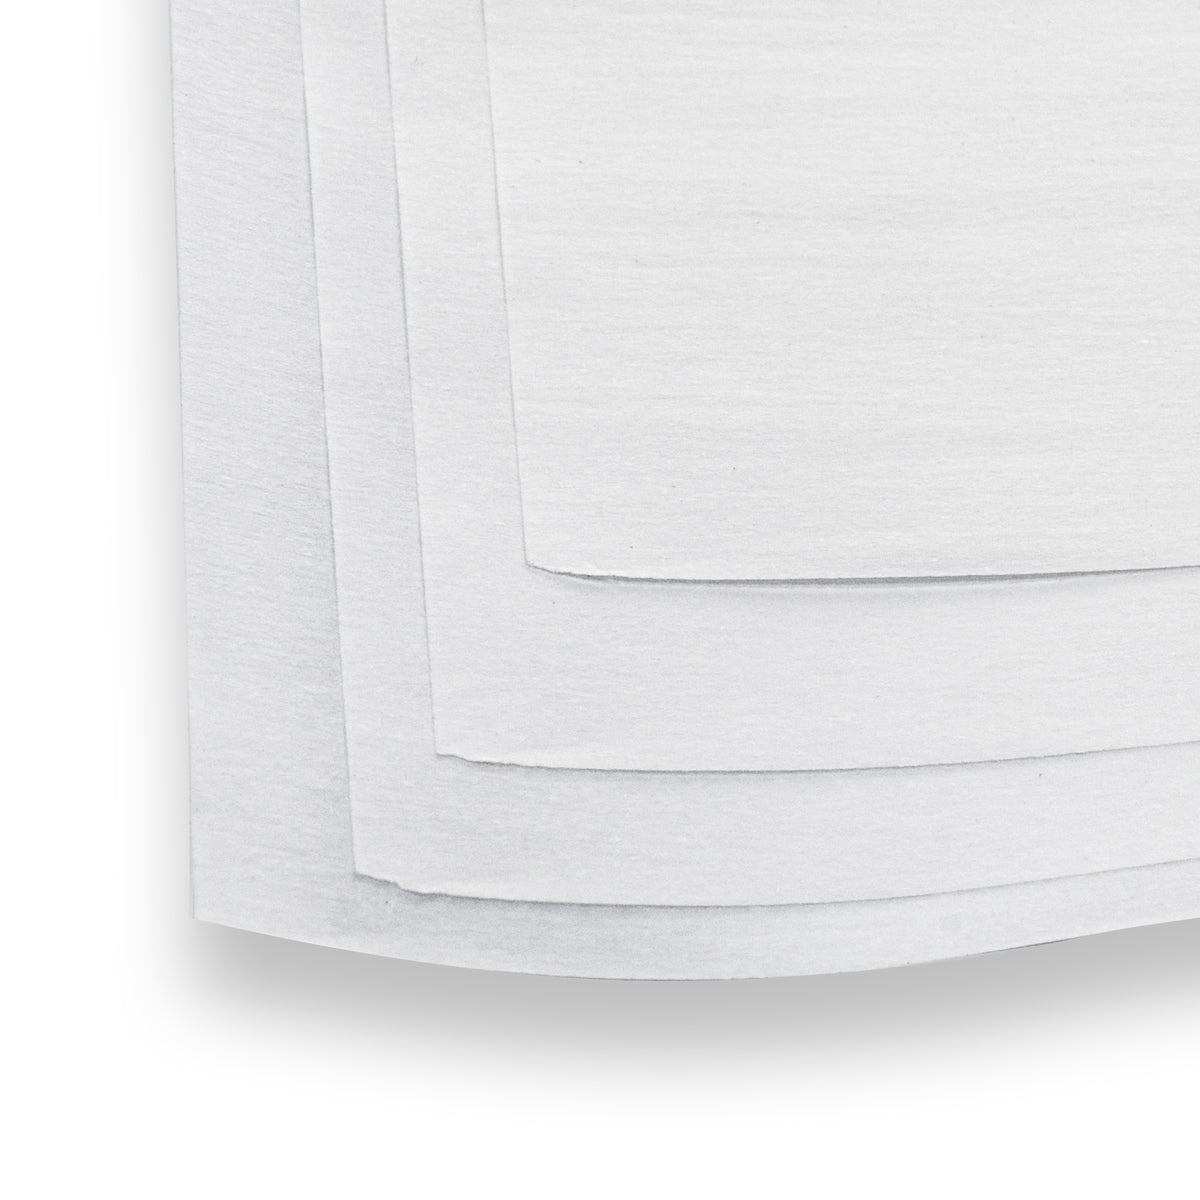 Handheld Rosin Press 32LB Parchment Paper – Ju1ceBox Rosin Press